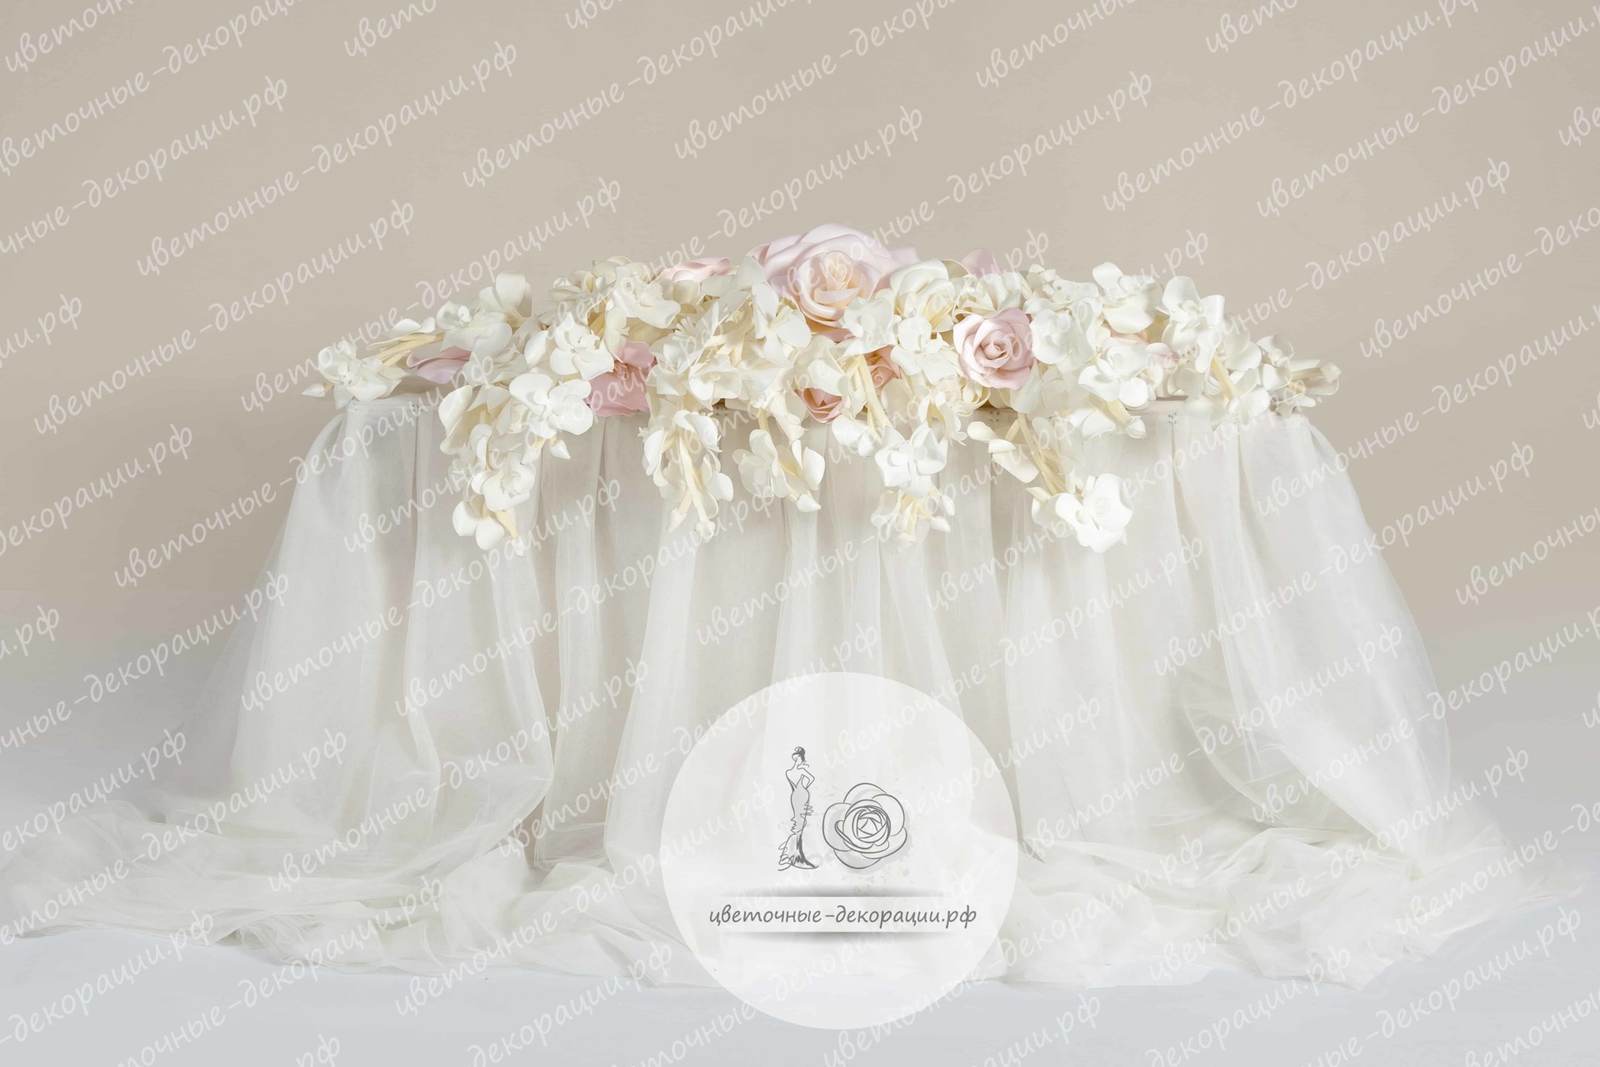 Президиум из цветов на свадьбу в белых и розовых цветах